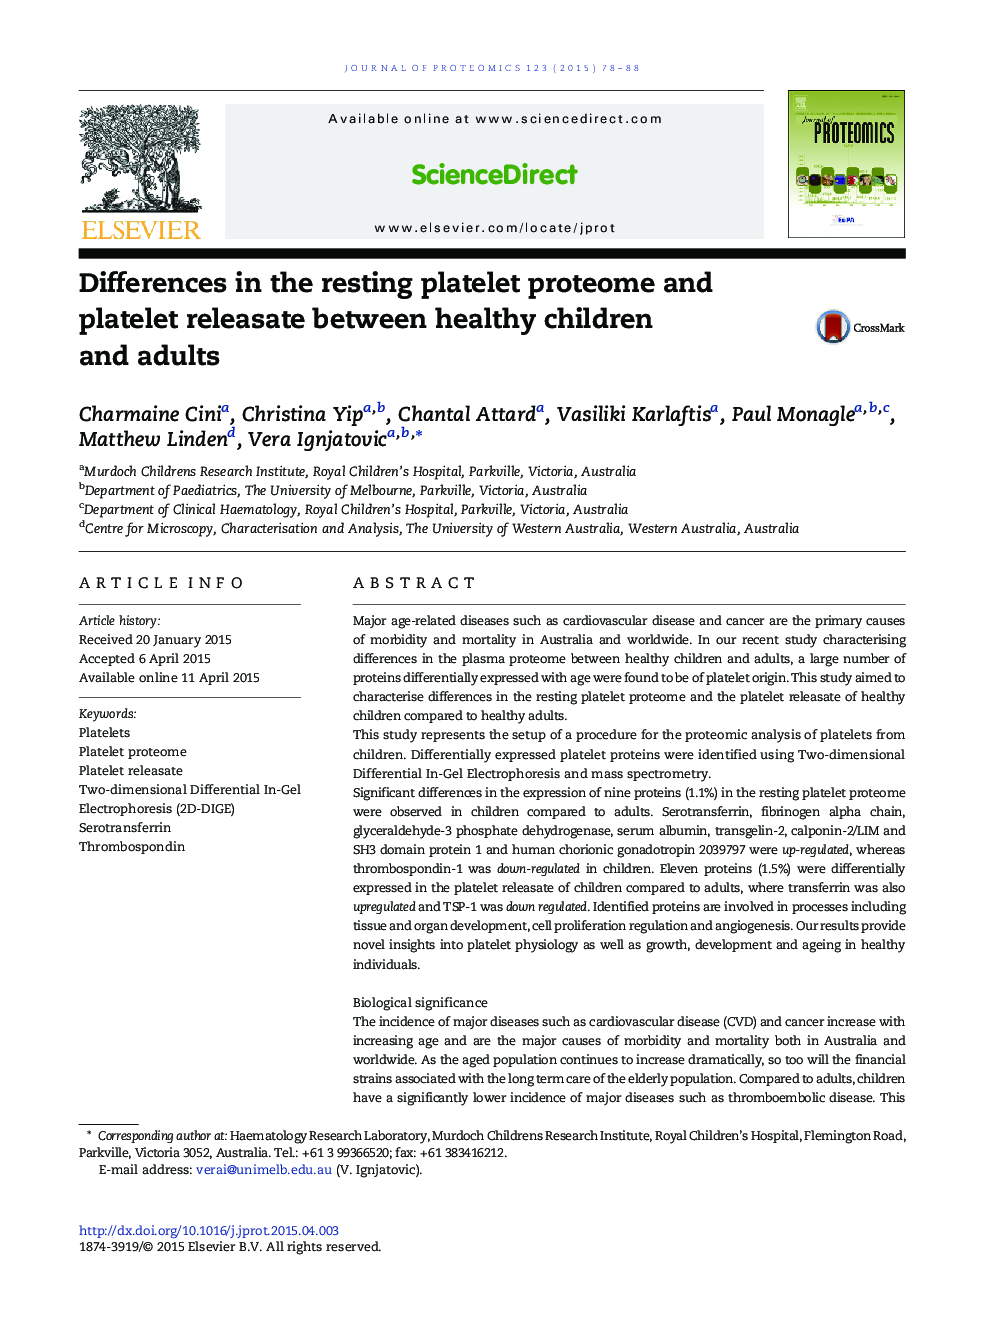 تفاوت پروتئوم و پلاکت های پلاکتی استراحت بین کودکان سالم و بزرگسالان آزاد می شود 